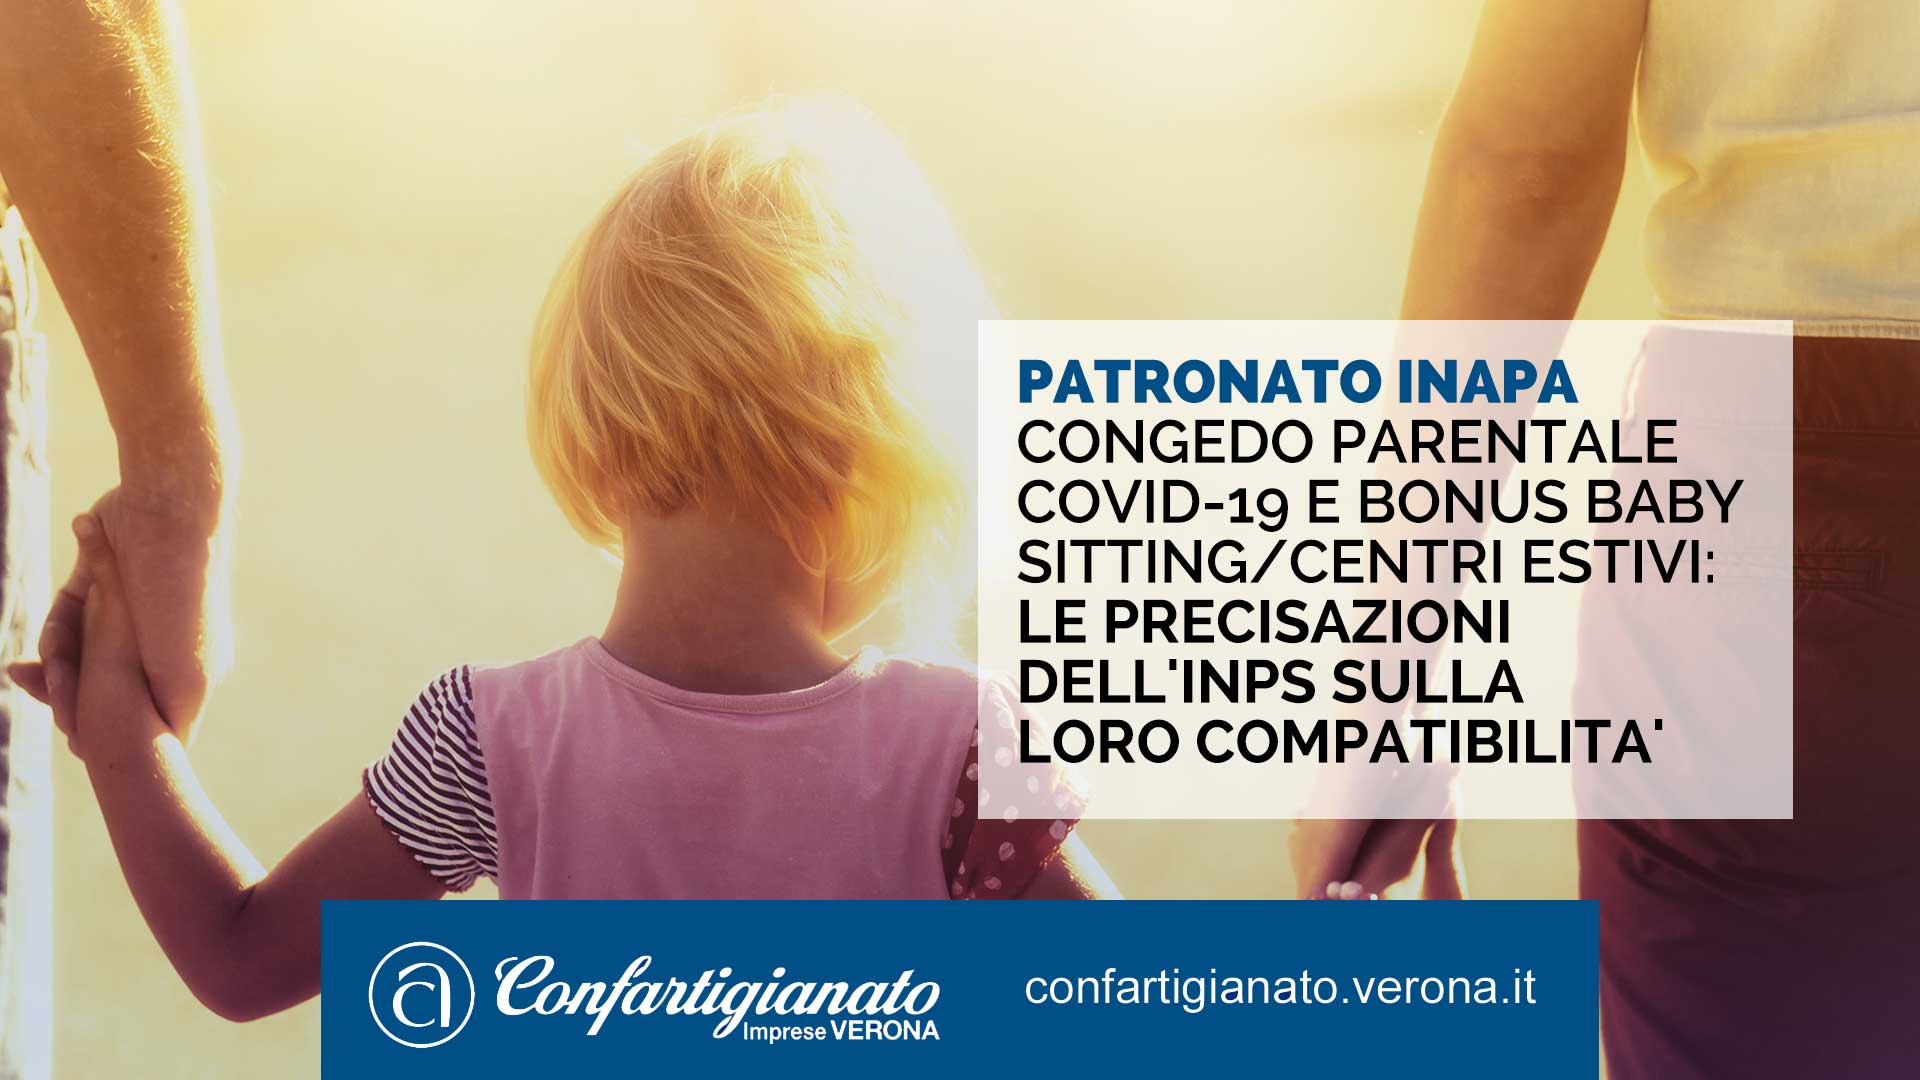 PATRONATO INAPA – Congedo parentale Covid-19 e bonus baby sitting/centri estivi: precisazioni dell'INPS sulla loro compatibilita'